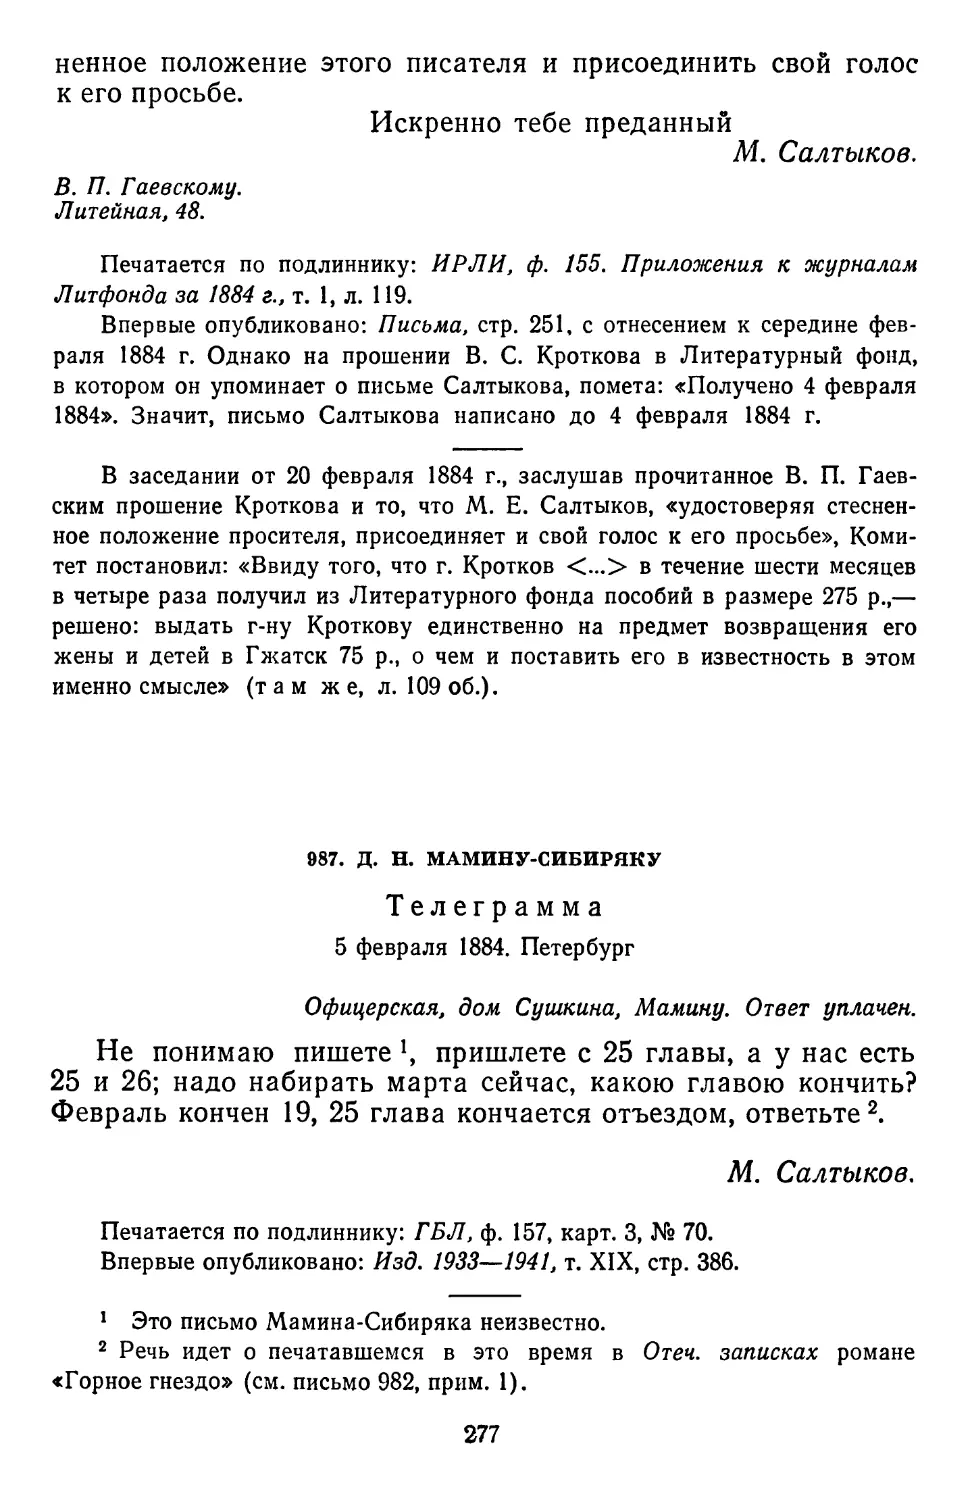 987.Д. Н. Мамину-Сибиряку. Телеграмма. 5 февраля 1884. Петербург